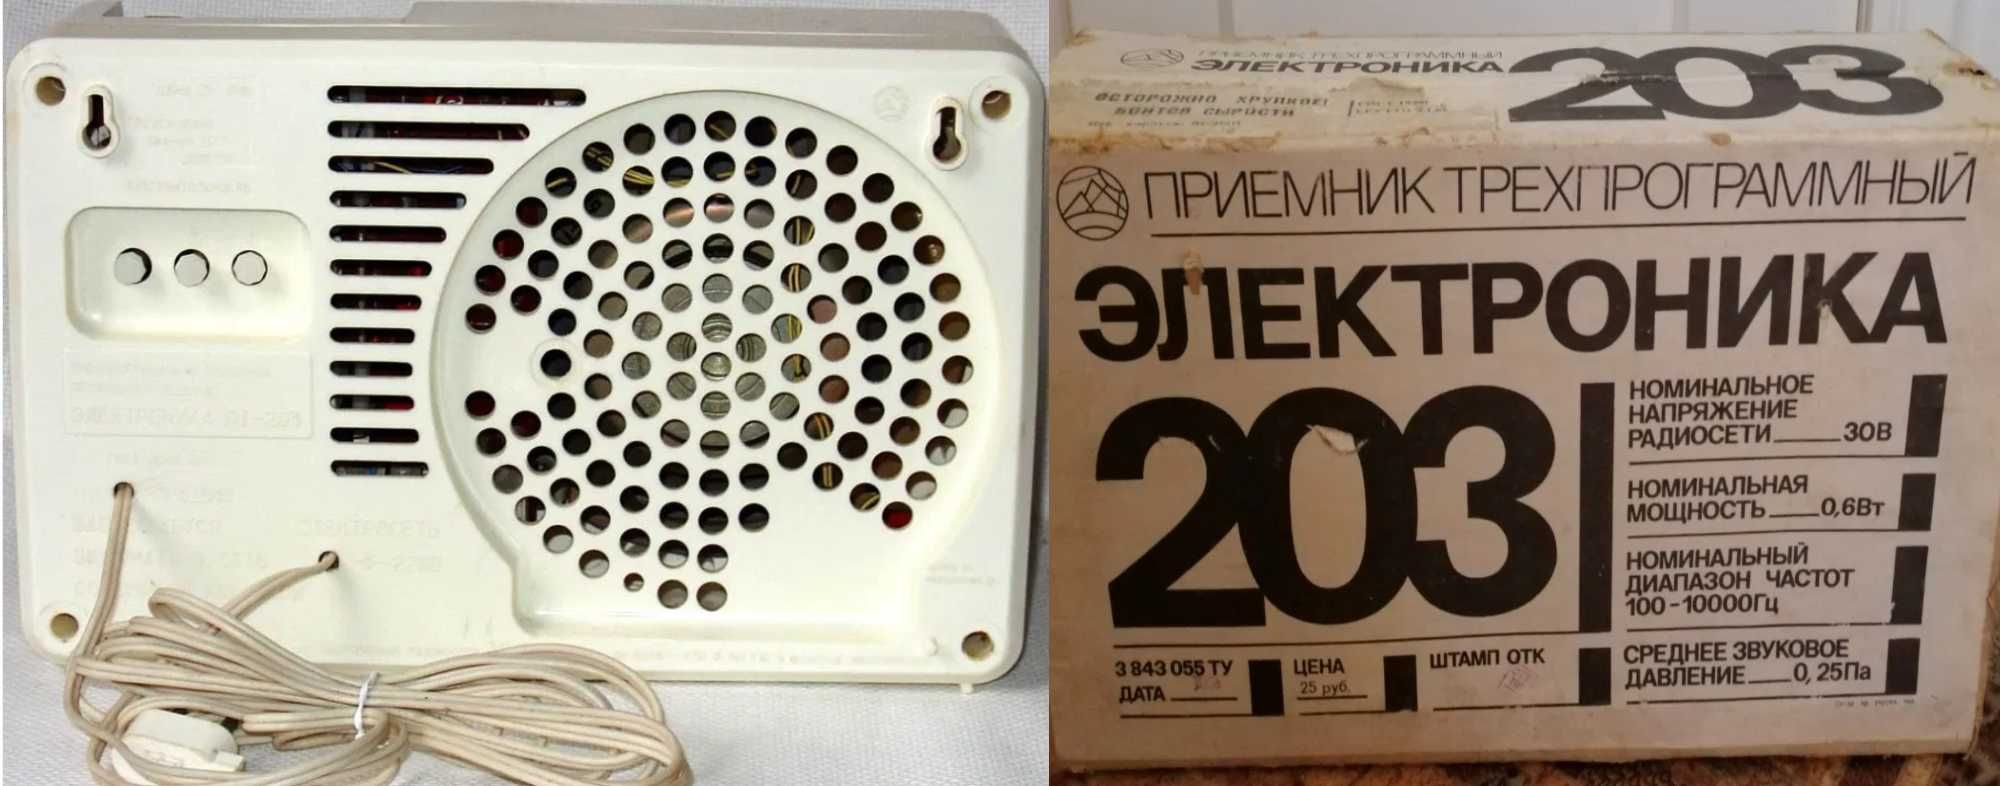 Радиоприемник трехпрограммный Электроника-203/ Электроника Р-403 НОВЫЙ